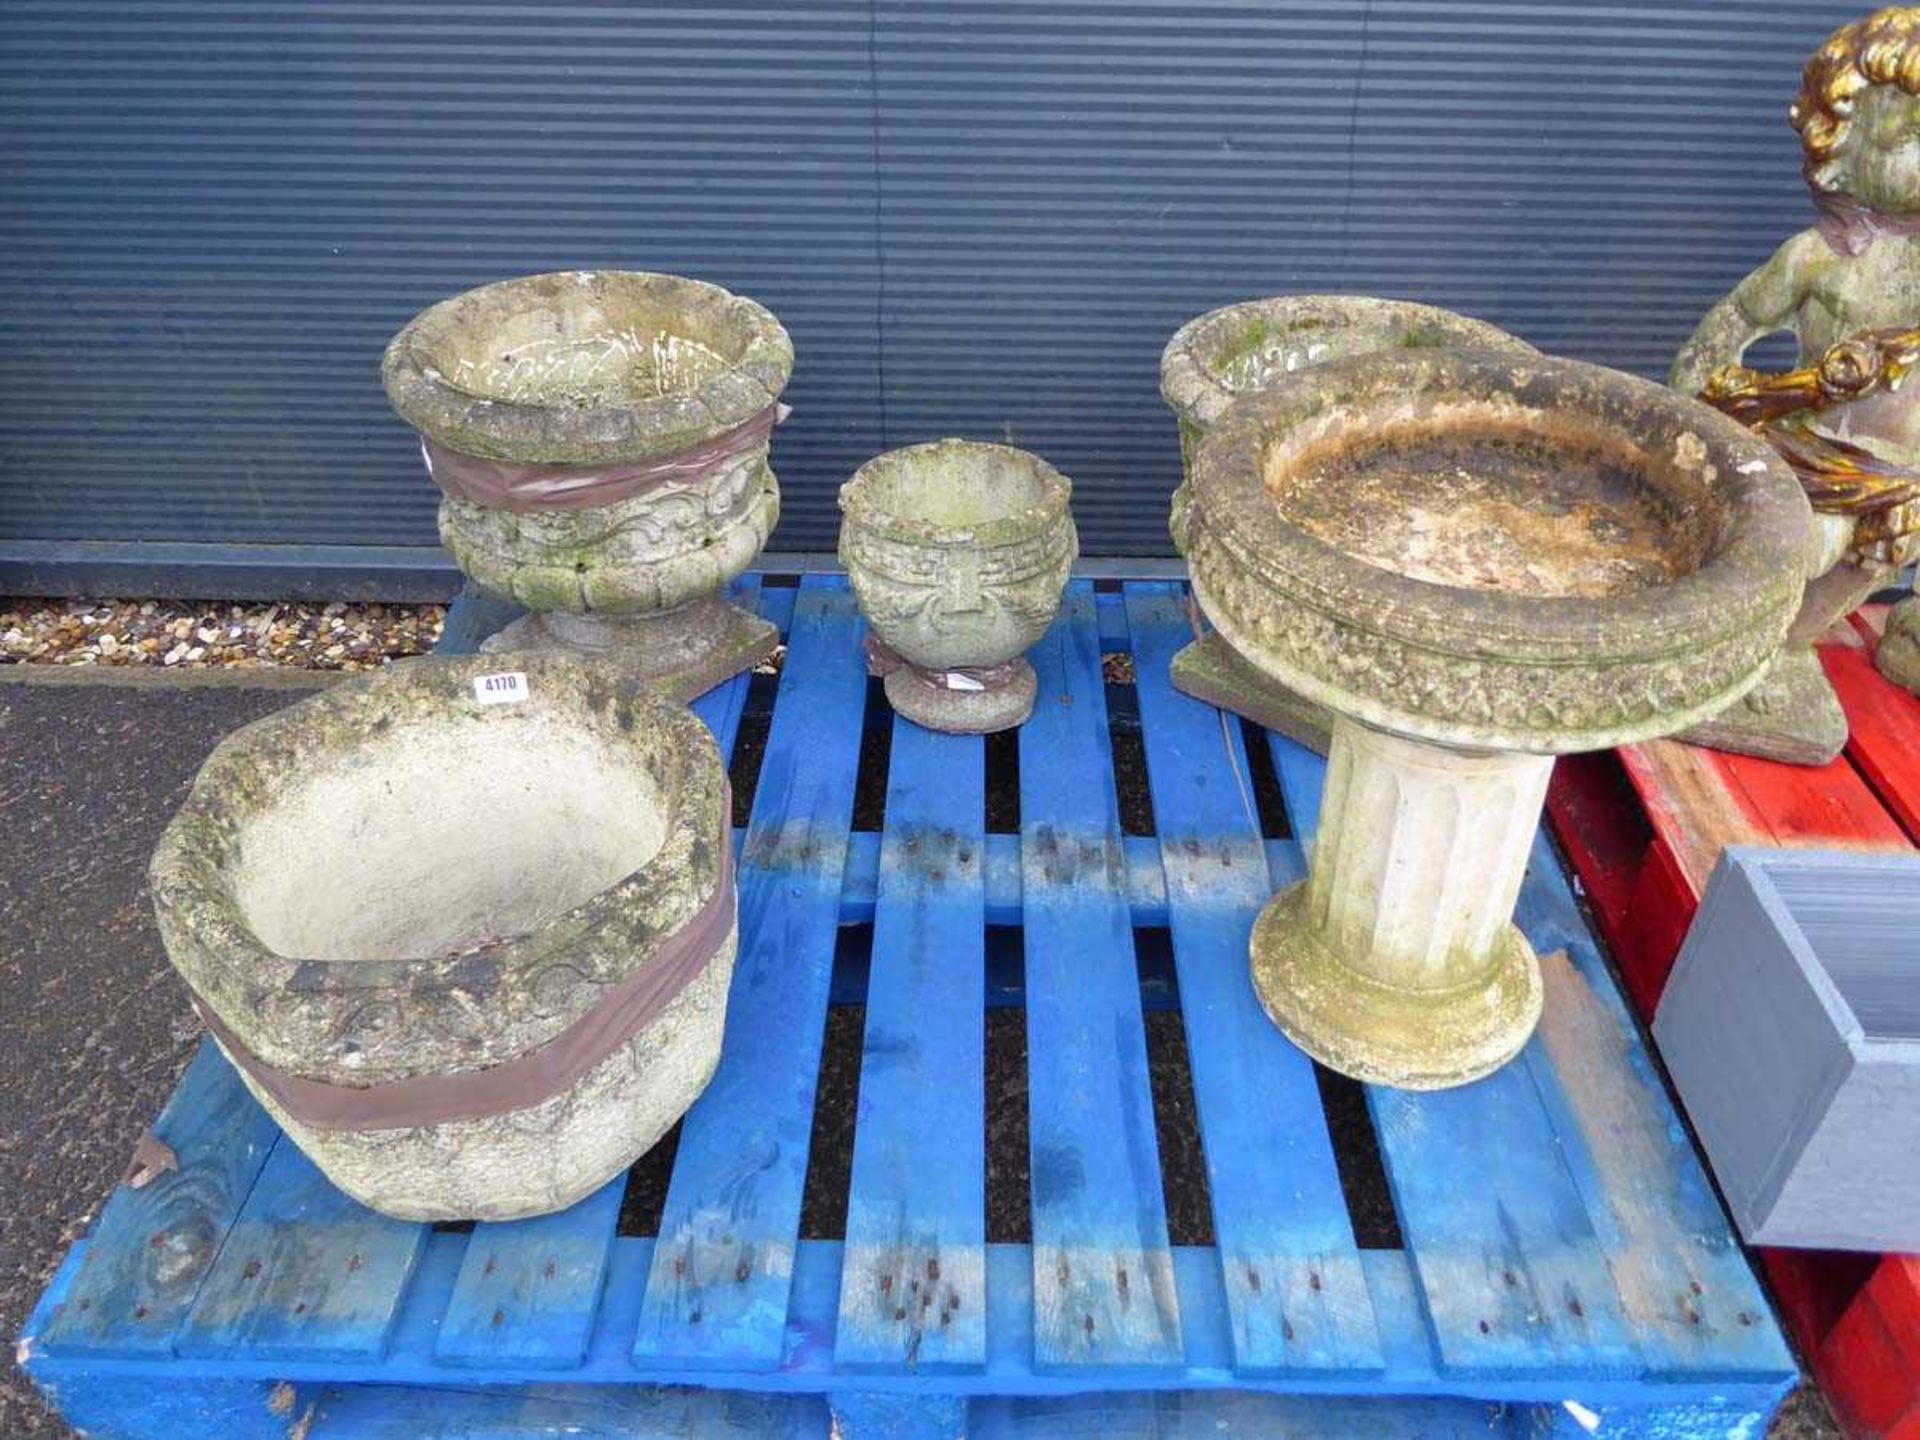 Pallet of assorted garden pots